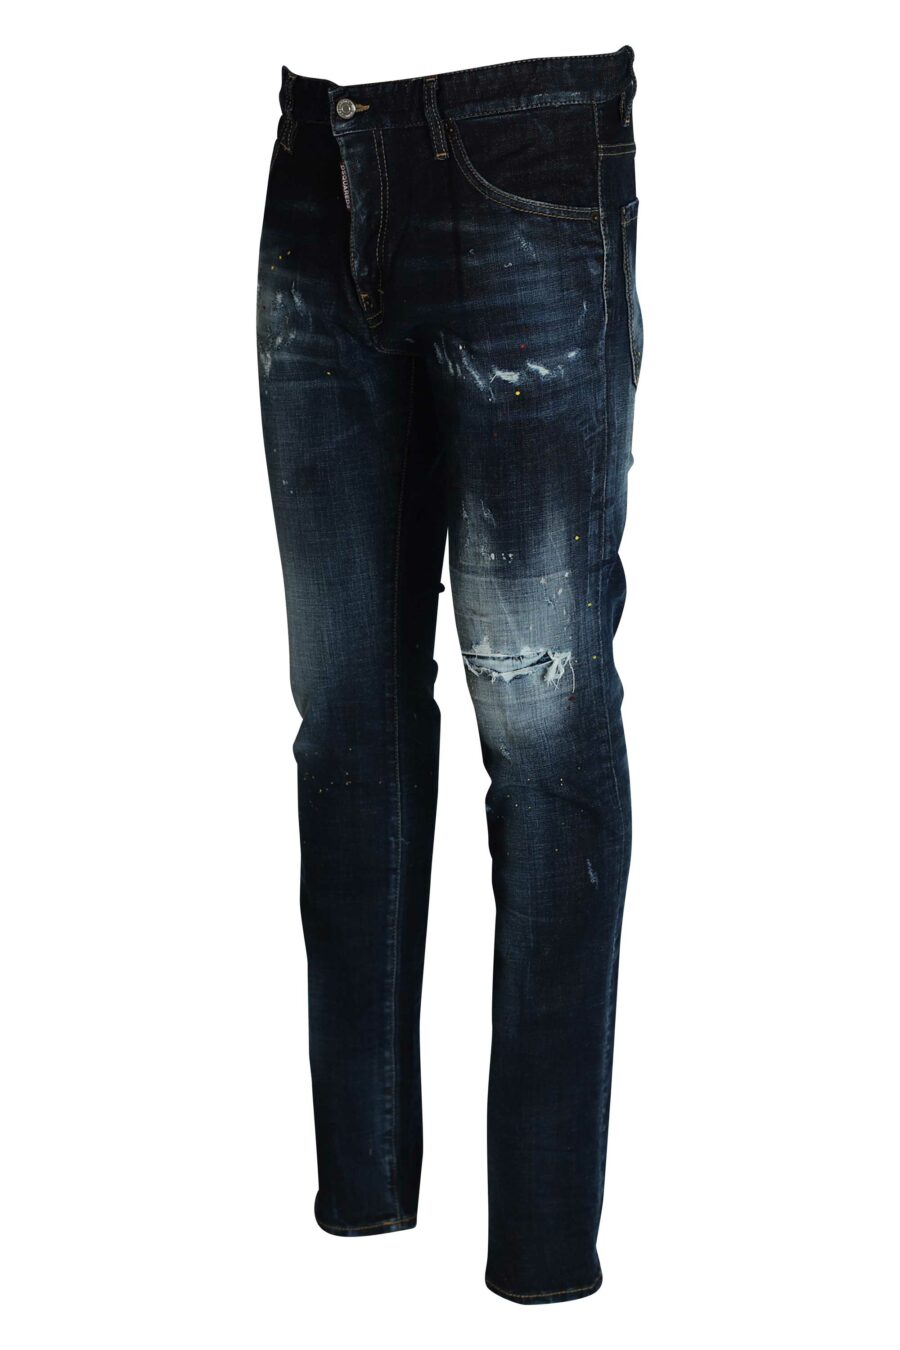 Pantalón vaquero azul oscuro "cool guy jean" con pintura de colores - 8056185863833 2